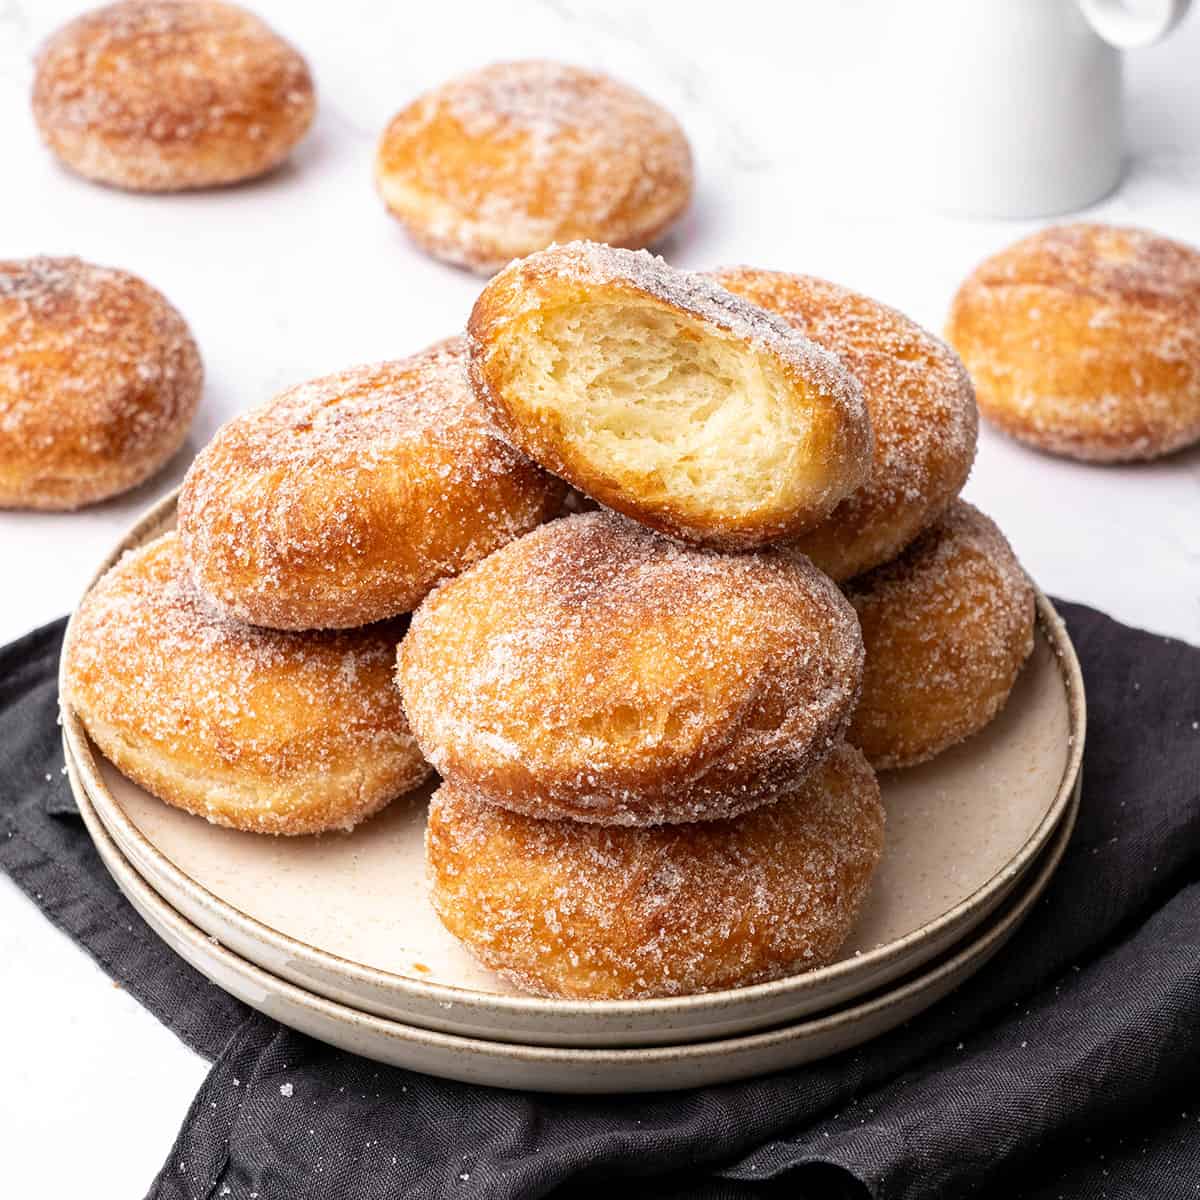 Brioche donuts on a plate.